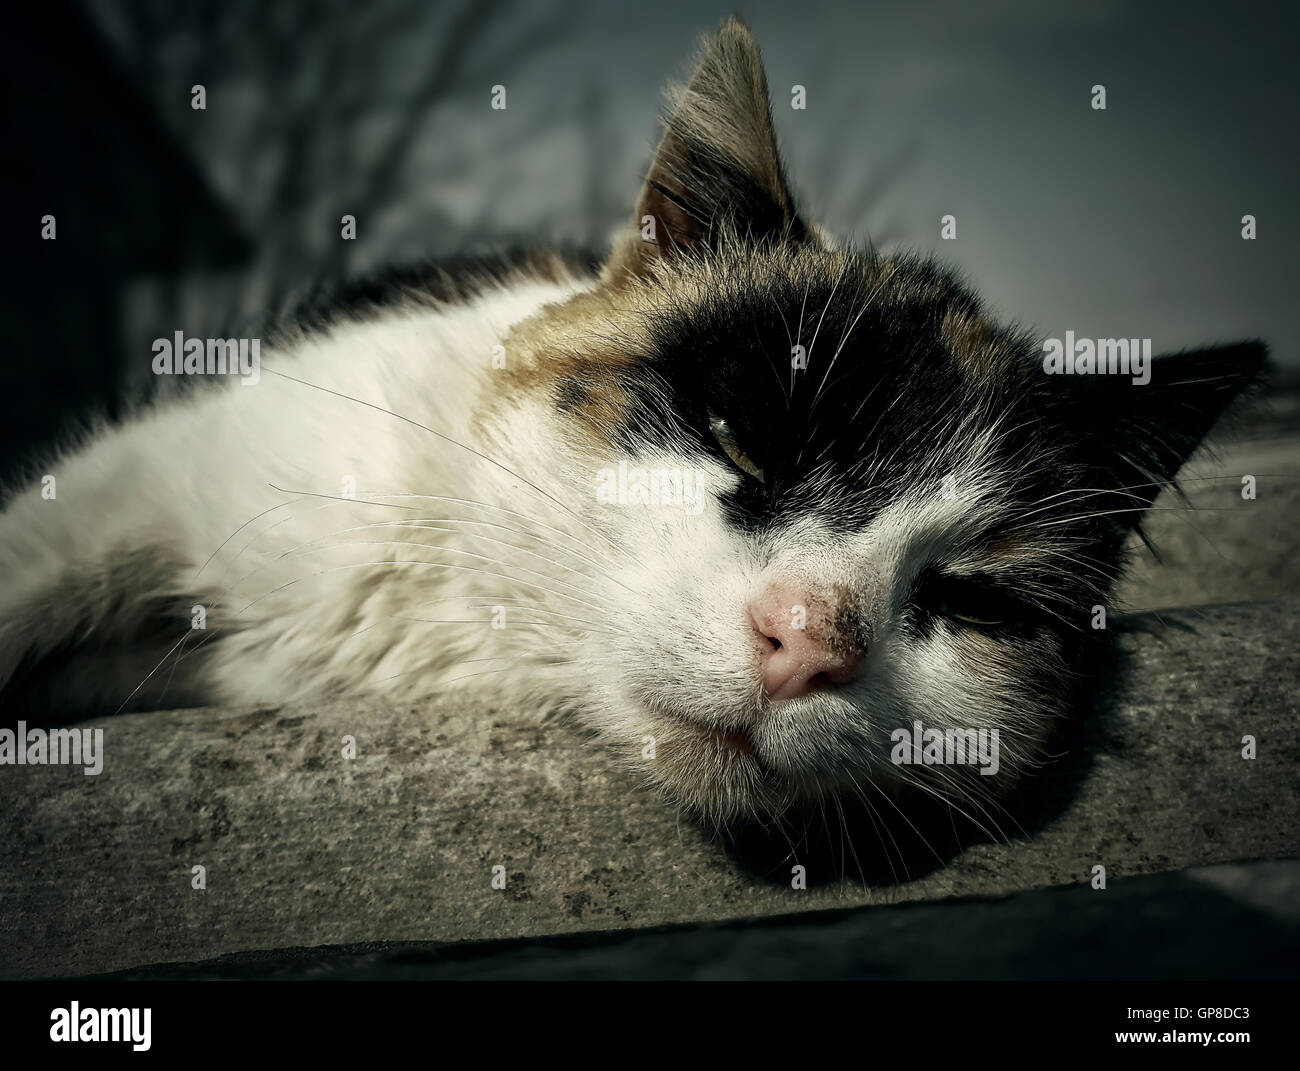 Sleepy et lazy cat pays couché Banque D'Images